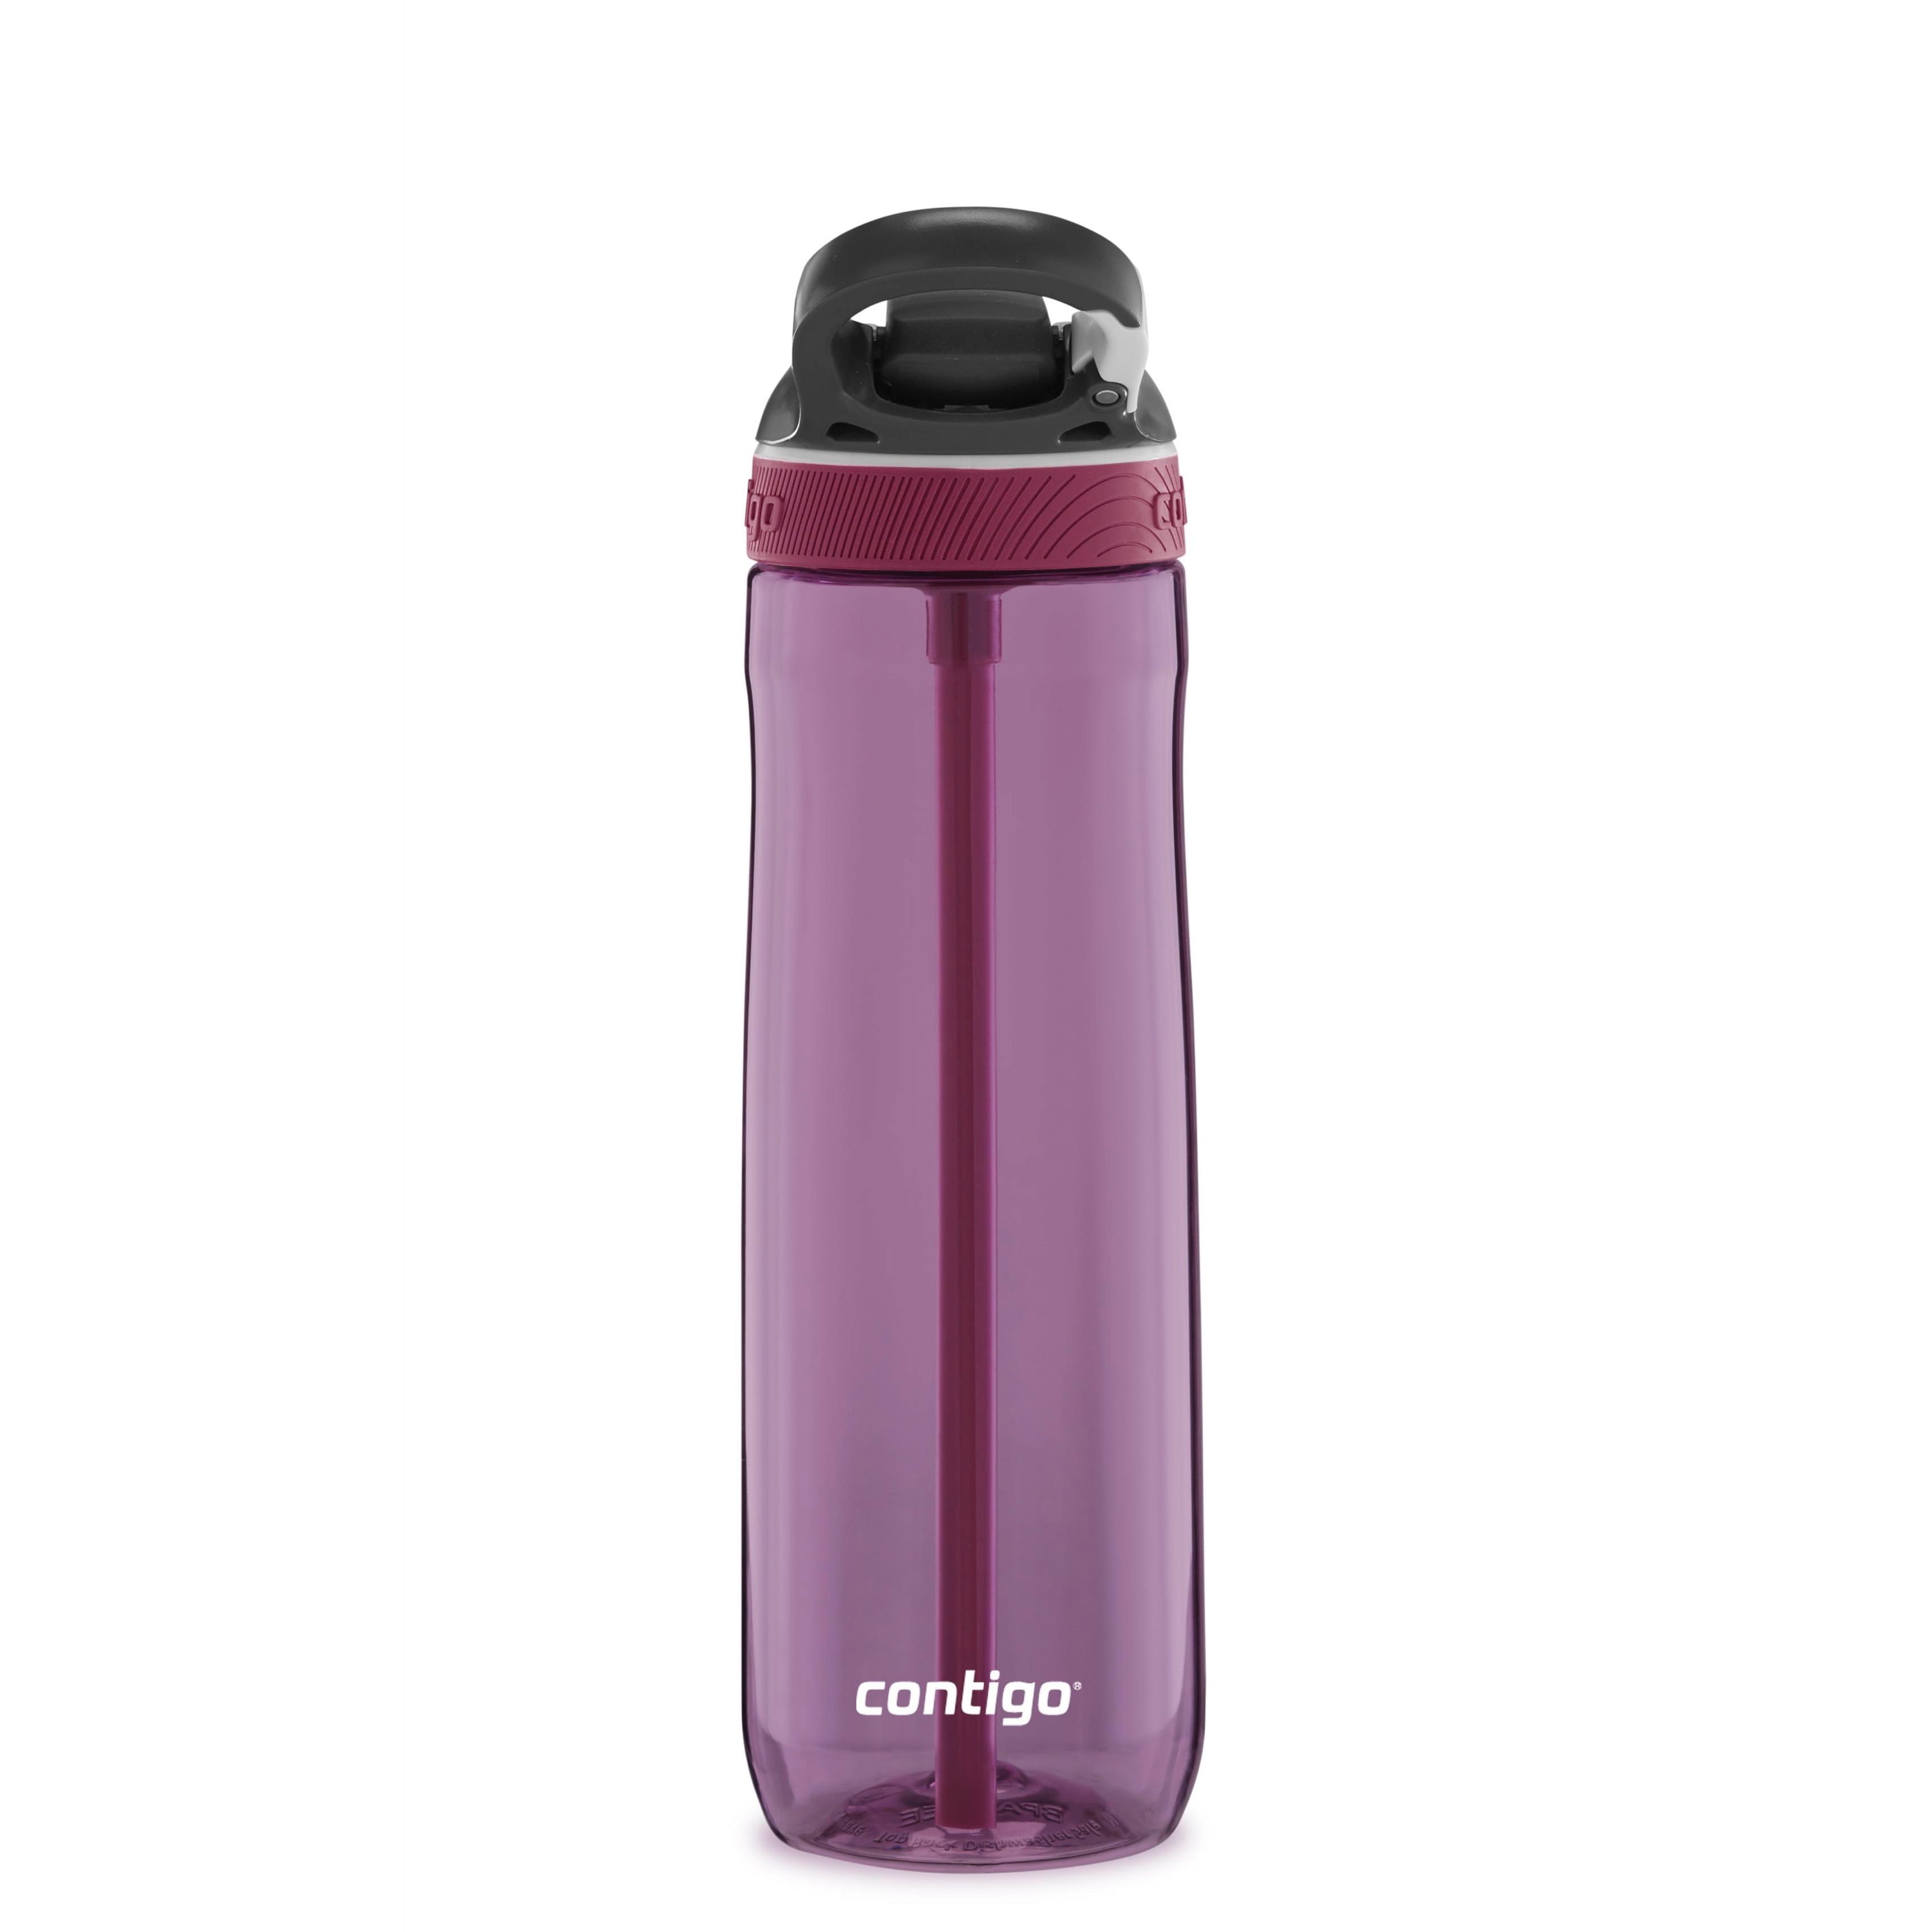 Contigo Water Bottle,24 oz.,Smoke/Gray JKH100A01, 1 - QFC